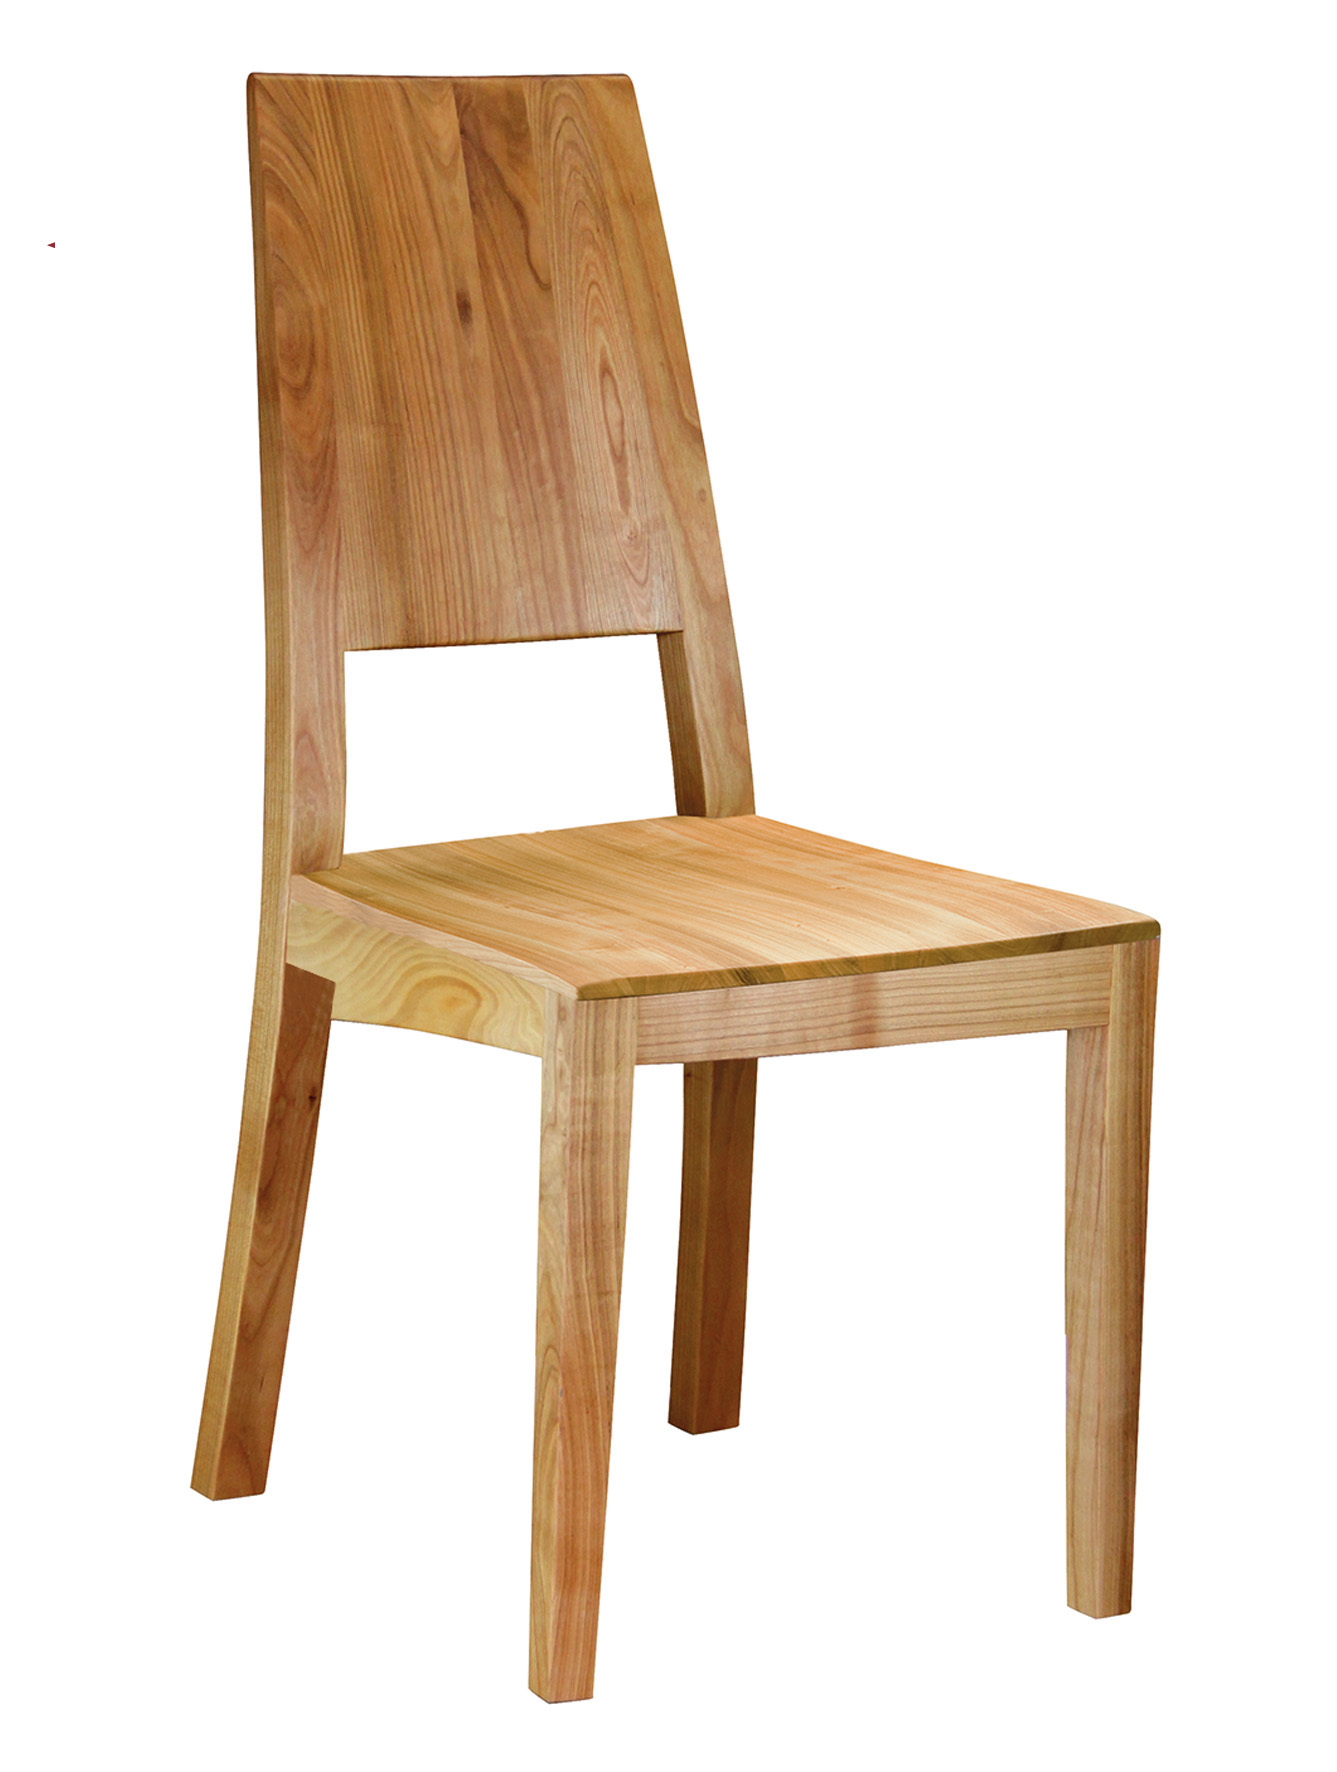 CLASSIC Stuhl mit körpergerecht ausgeformtem Holzsitz und hohem Rücken